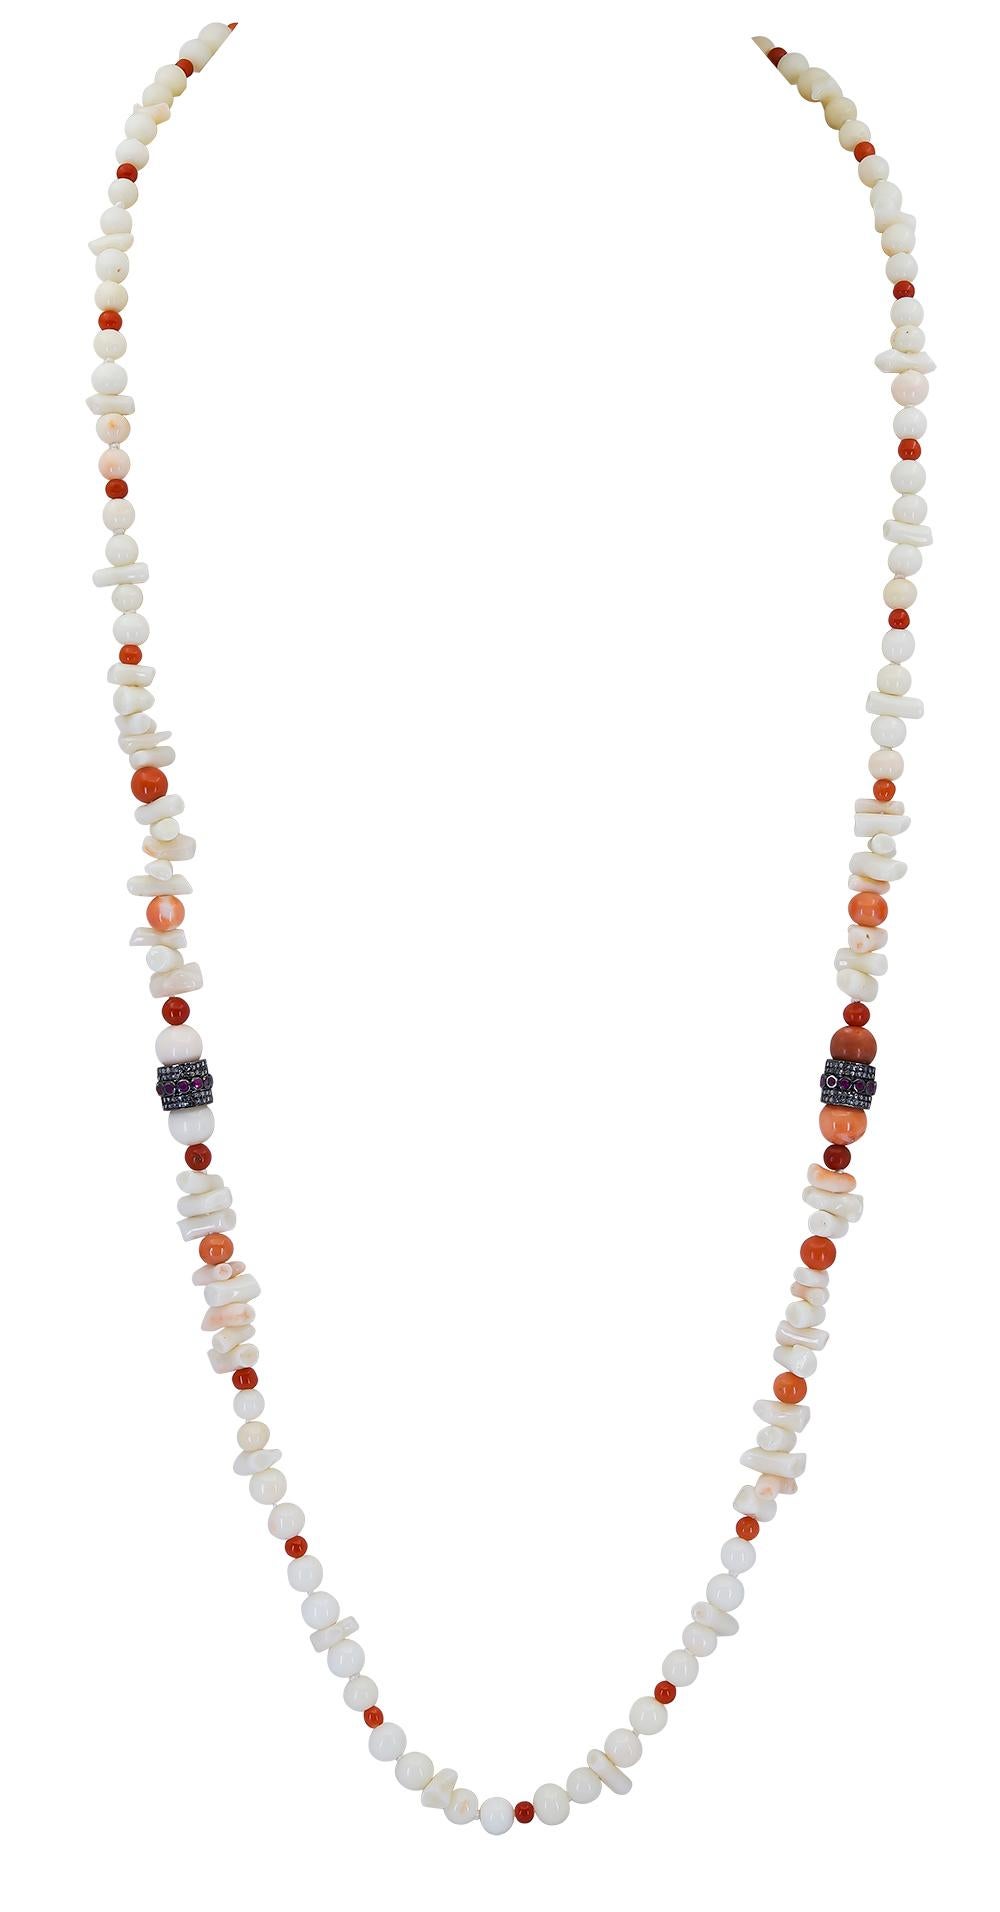 Un collier de corail blanc et rouge de 30 pouces avec des perles de corail rondes dont la taille varie de 3,5 mm à 8 mm chacune. Accentué avec du corail blanc de forme irrégulière et 2 rondelles de diamant.  
